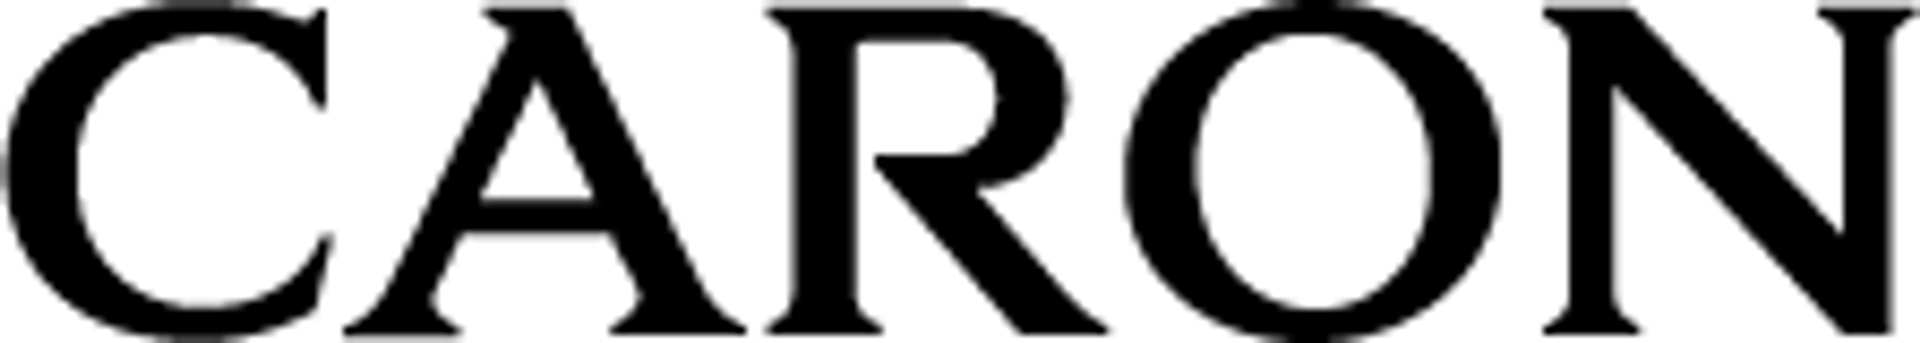 CARON logo de circulaires